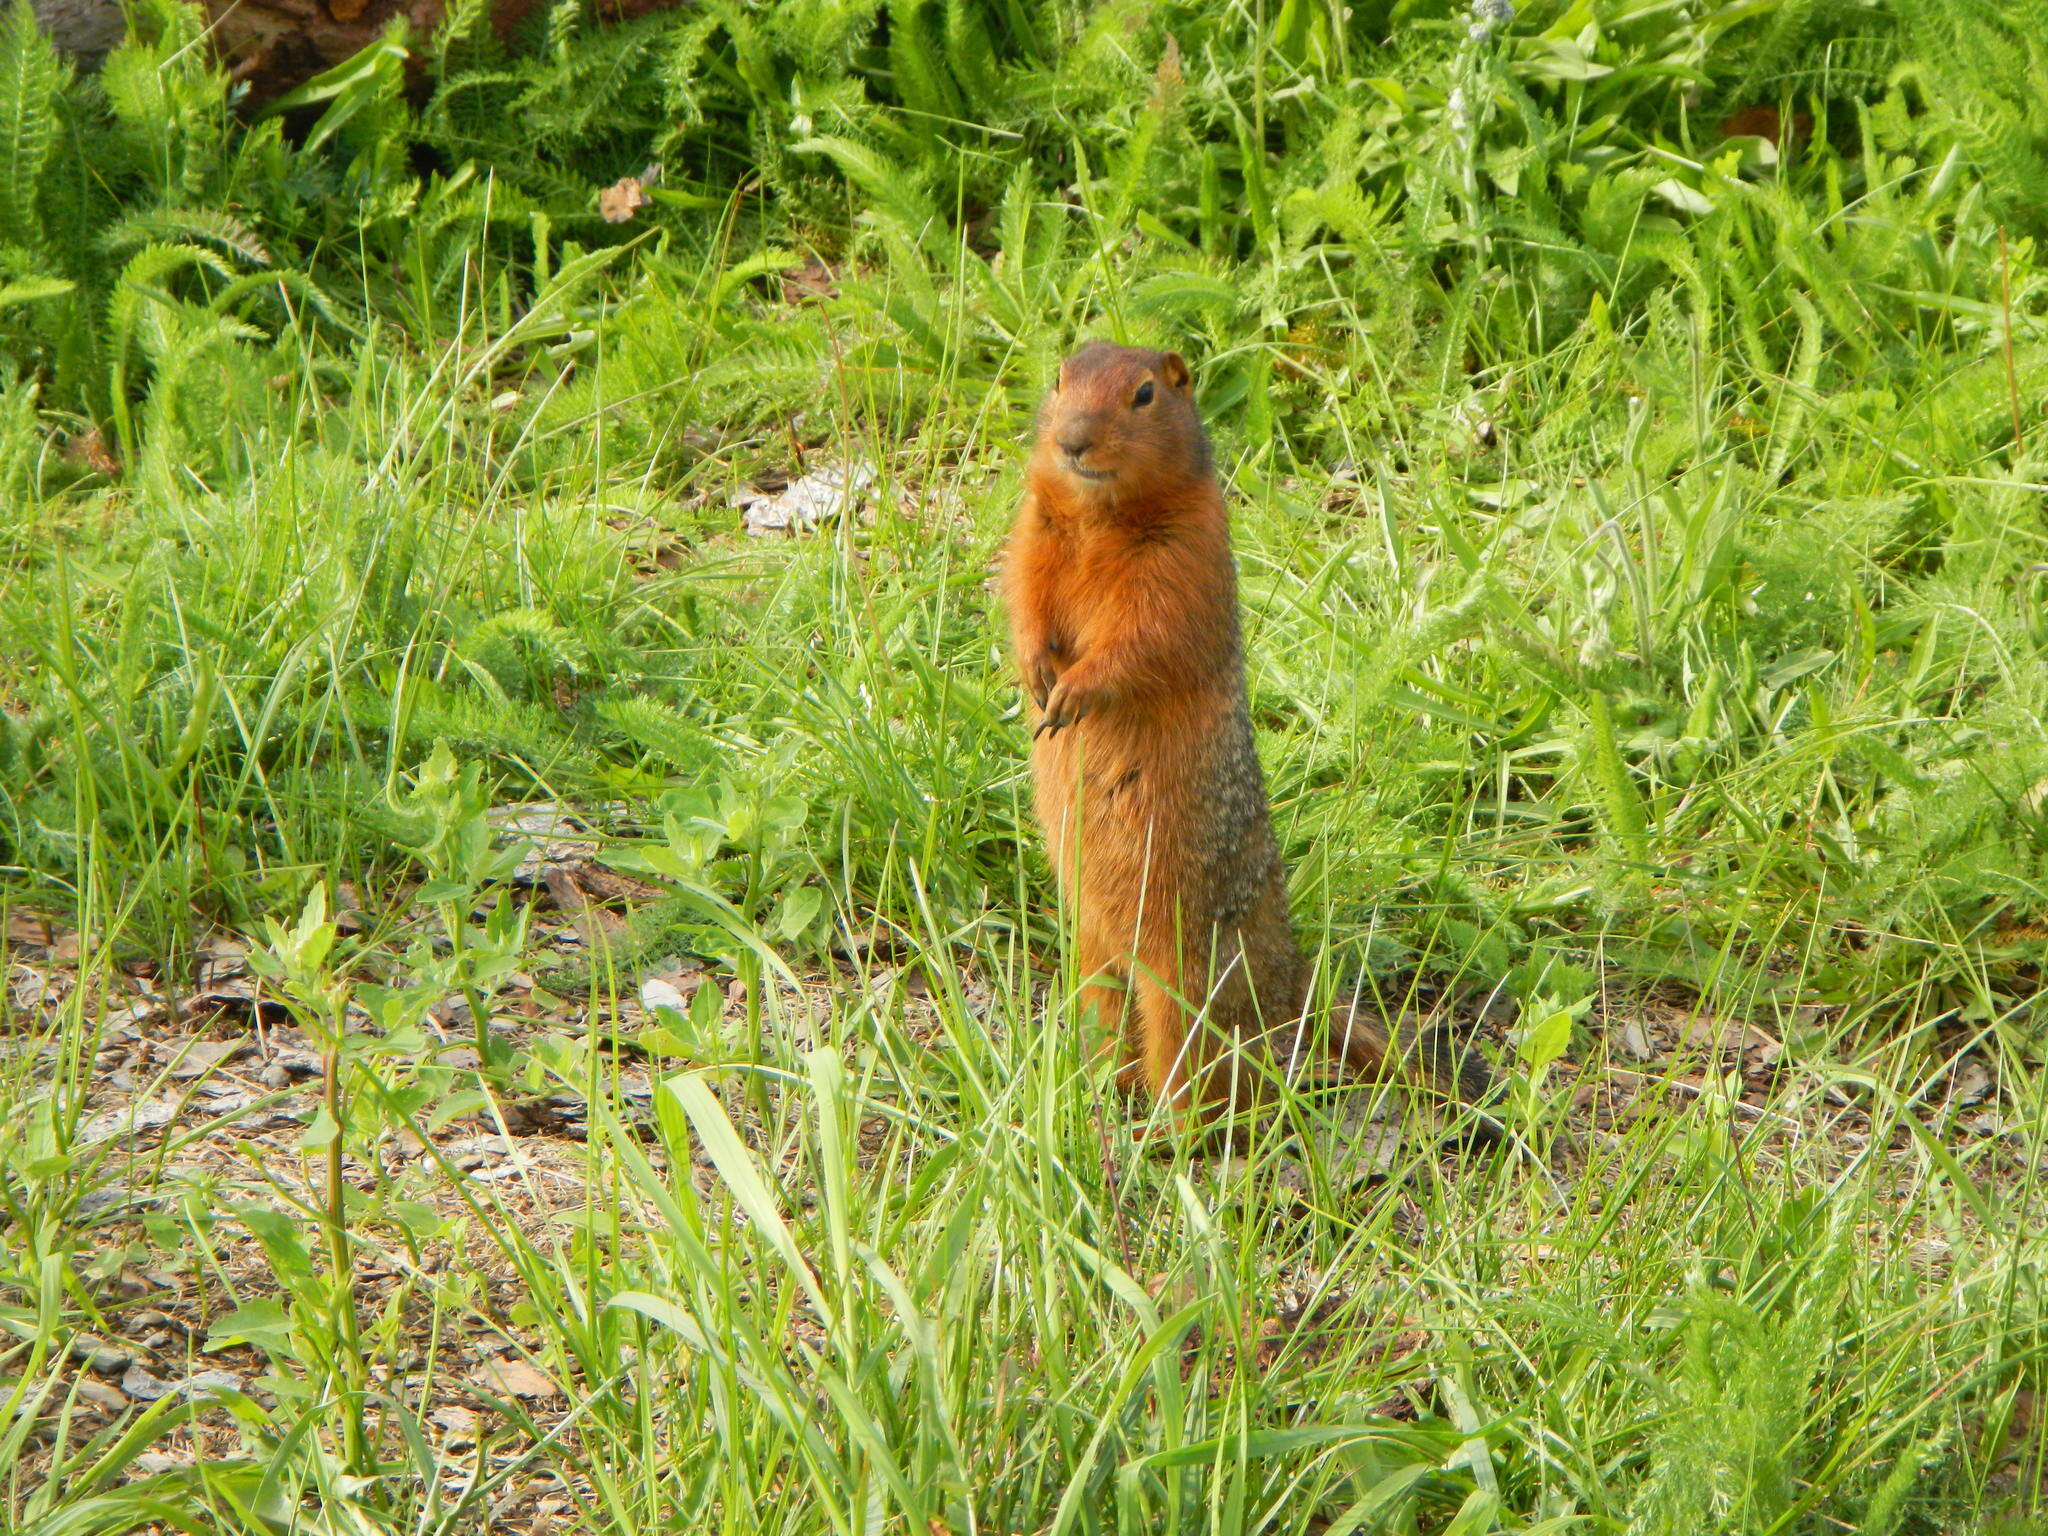 Image of Arctic ground squirrel